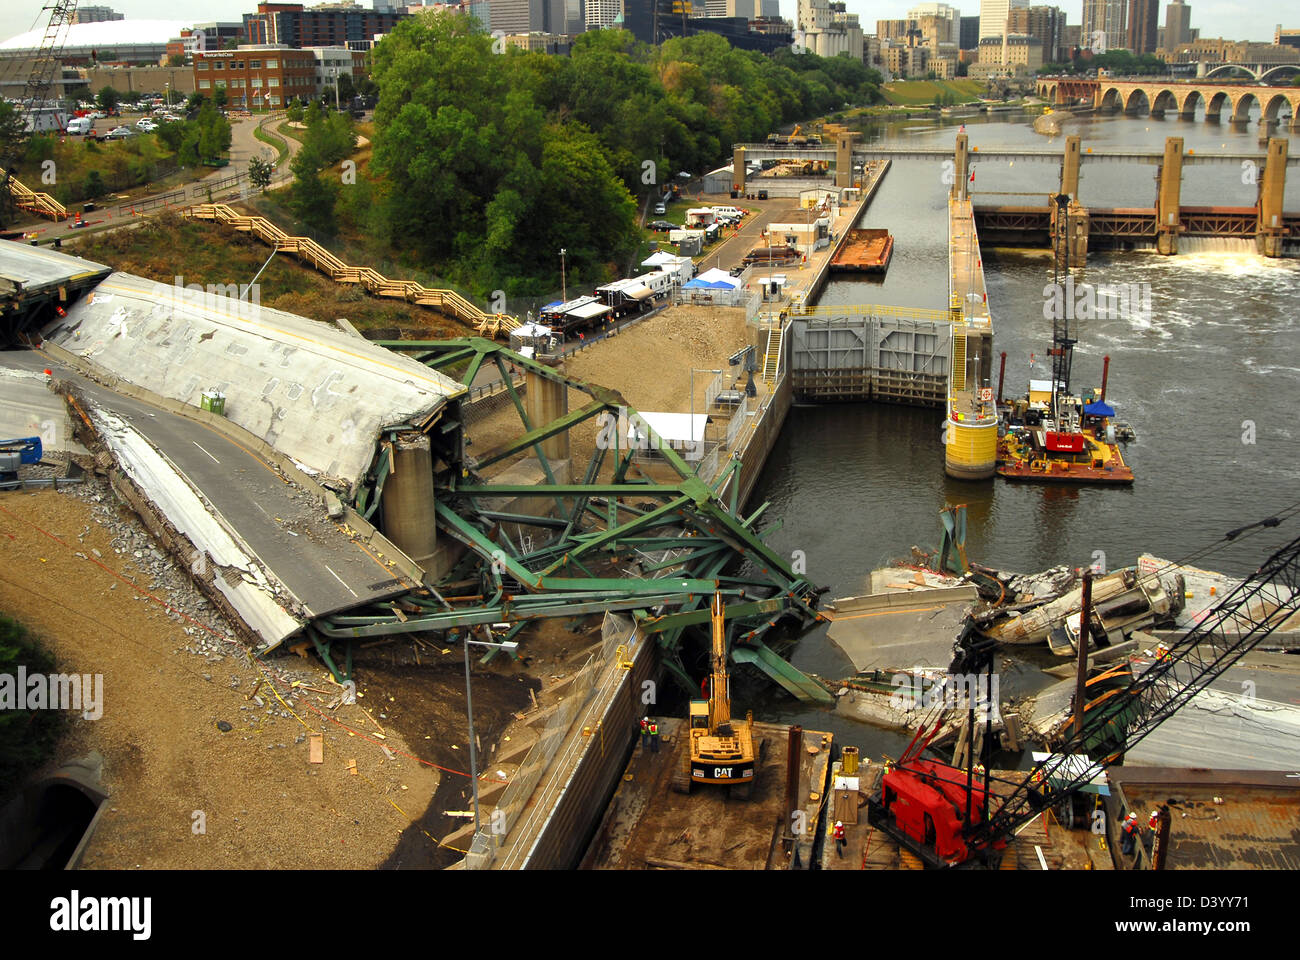 Blick auf die Reste der i-35 Brücke Einsturz 8. August 2007 in Minneapolis, MN. Die Brücke stürzte plötzlich während der Feierabendverkehr auf 1. August 2007 13 Menschen getötet und 145 verletzt. Stockfoto